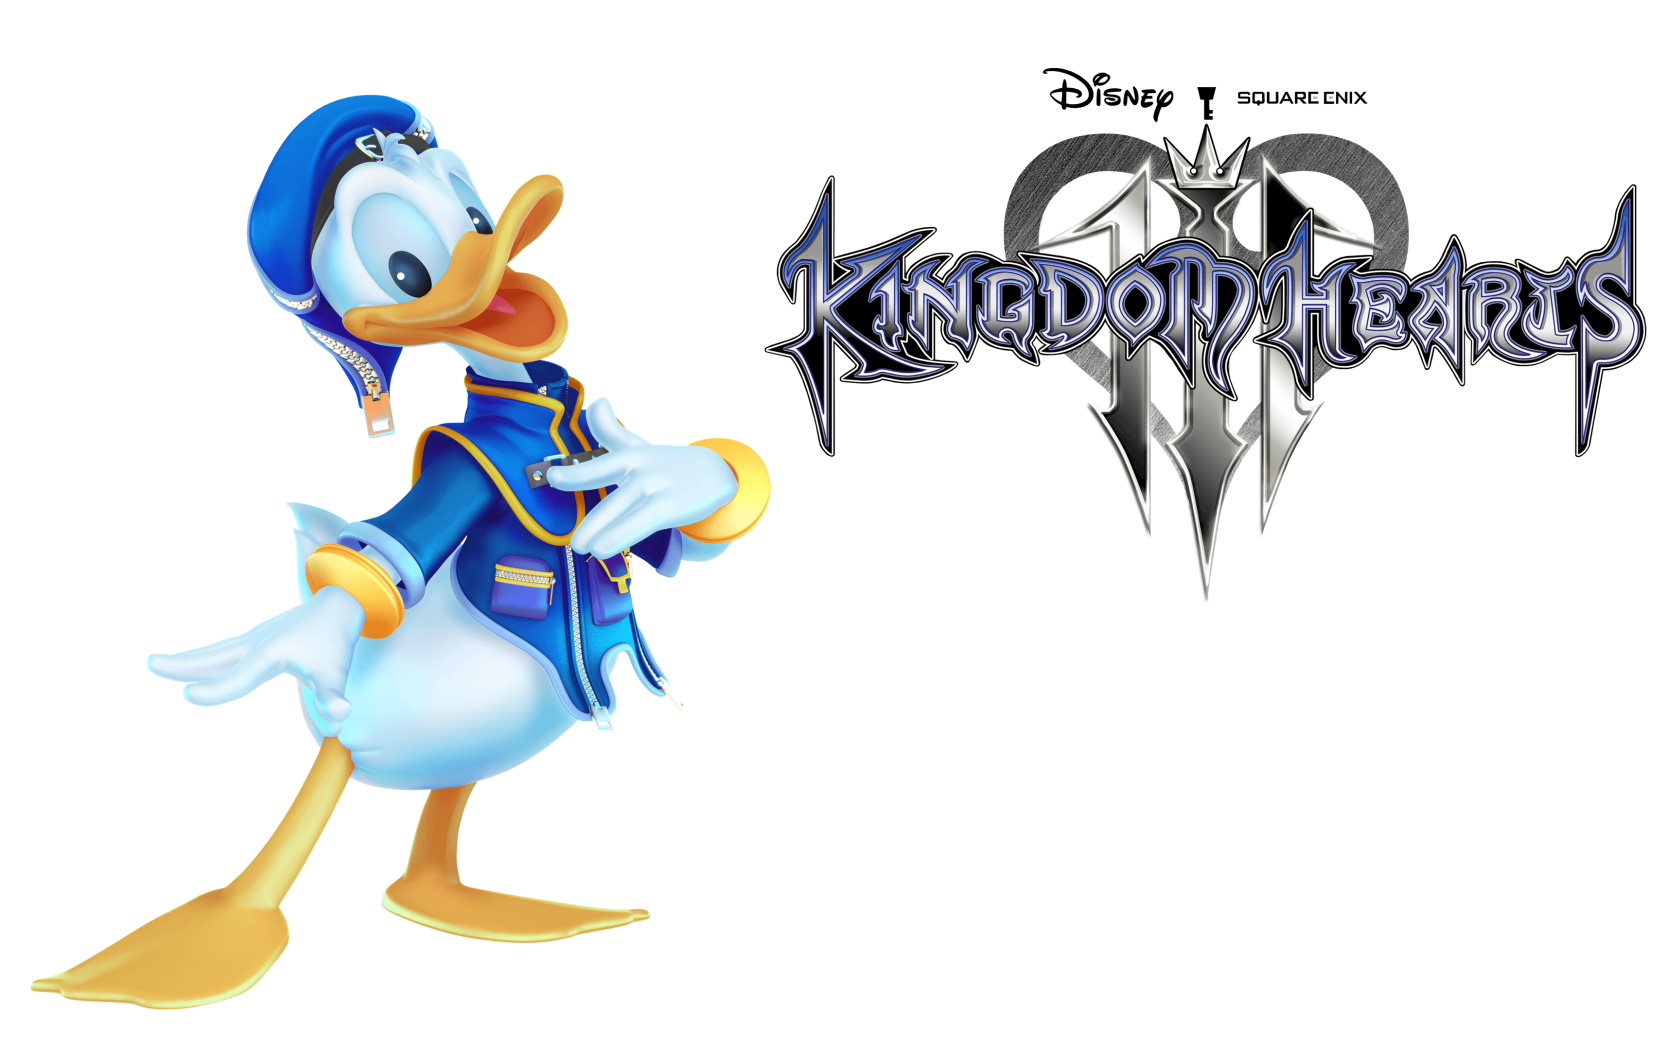 Дональд Дак персонаж компьютерной игры Kingdom Hearts III, 2019